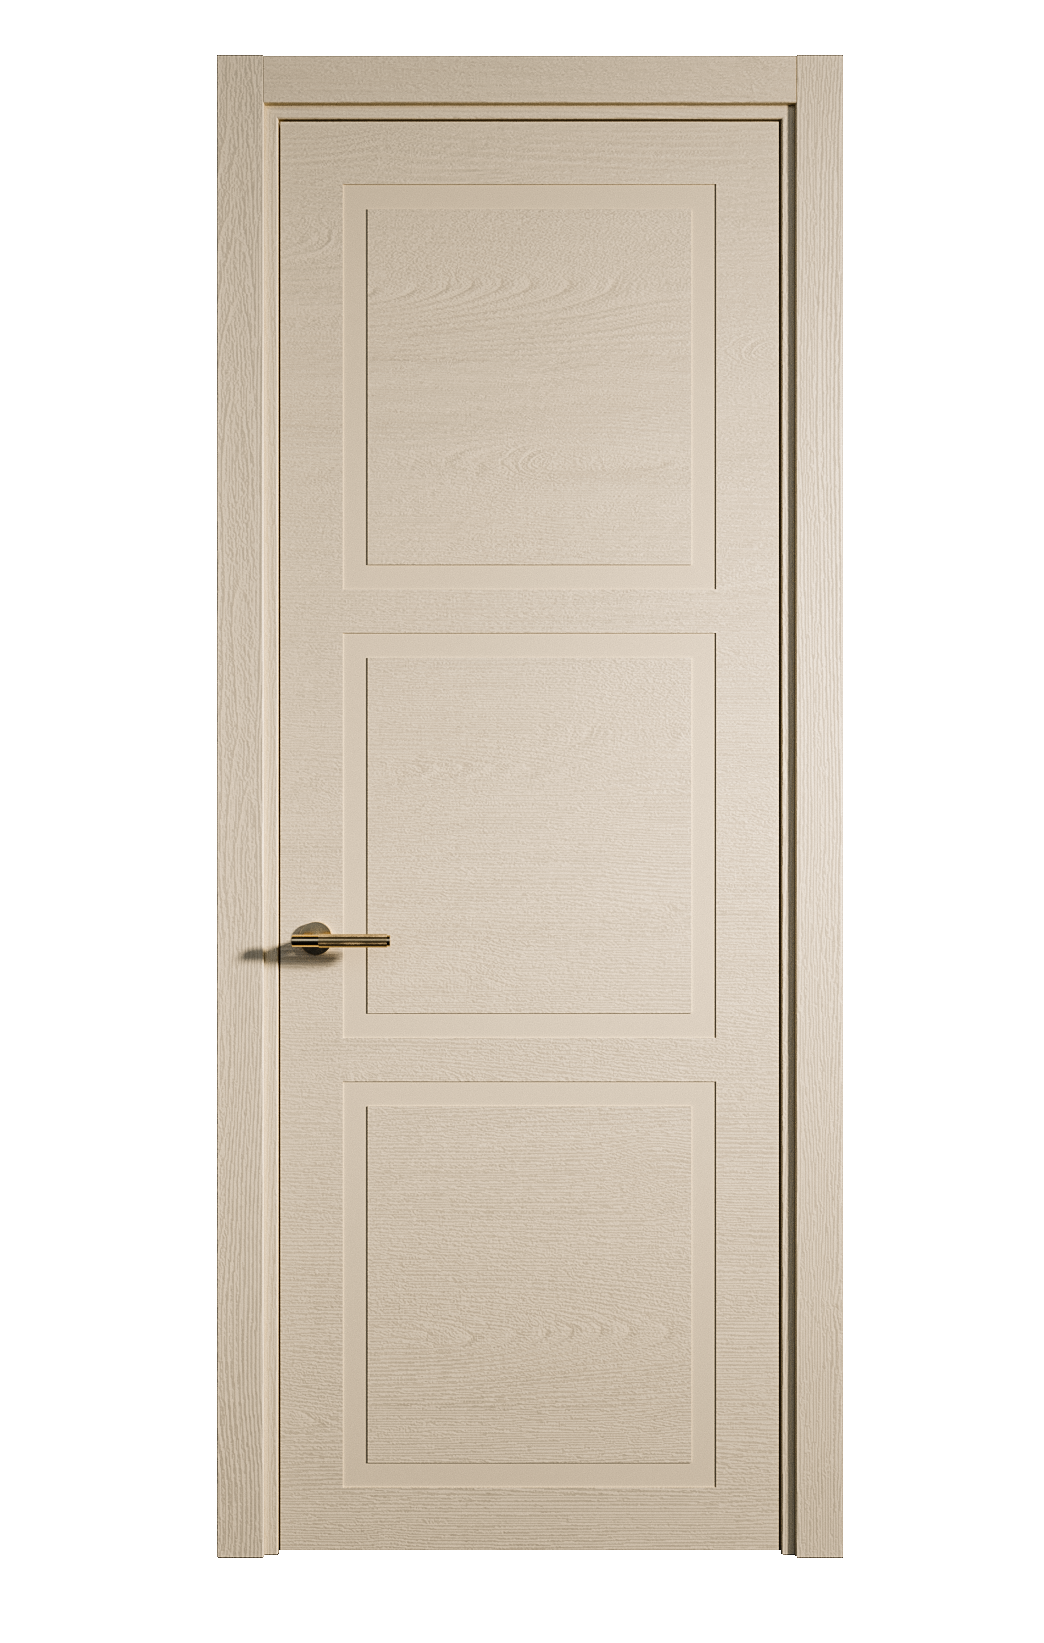 Межкомнатная дверь Бостон-3 глухая эмаль ral 1015 24450